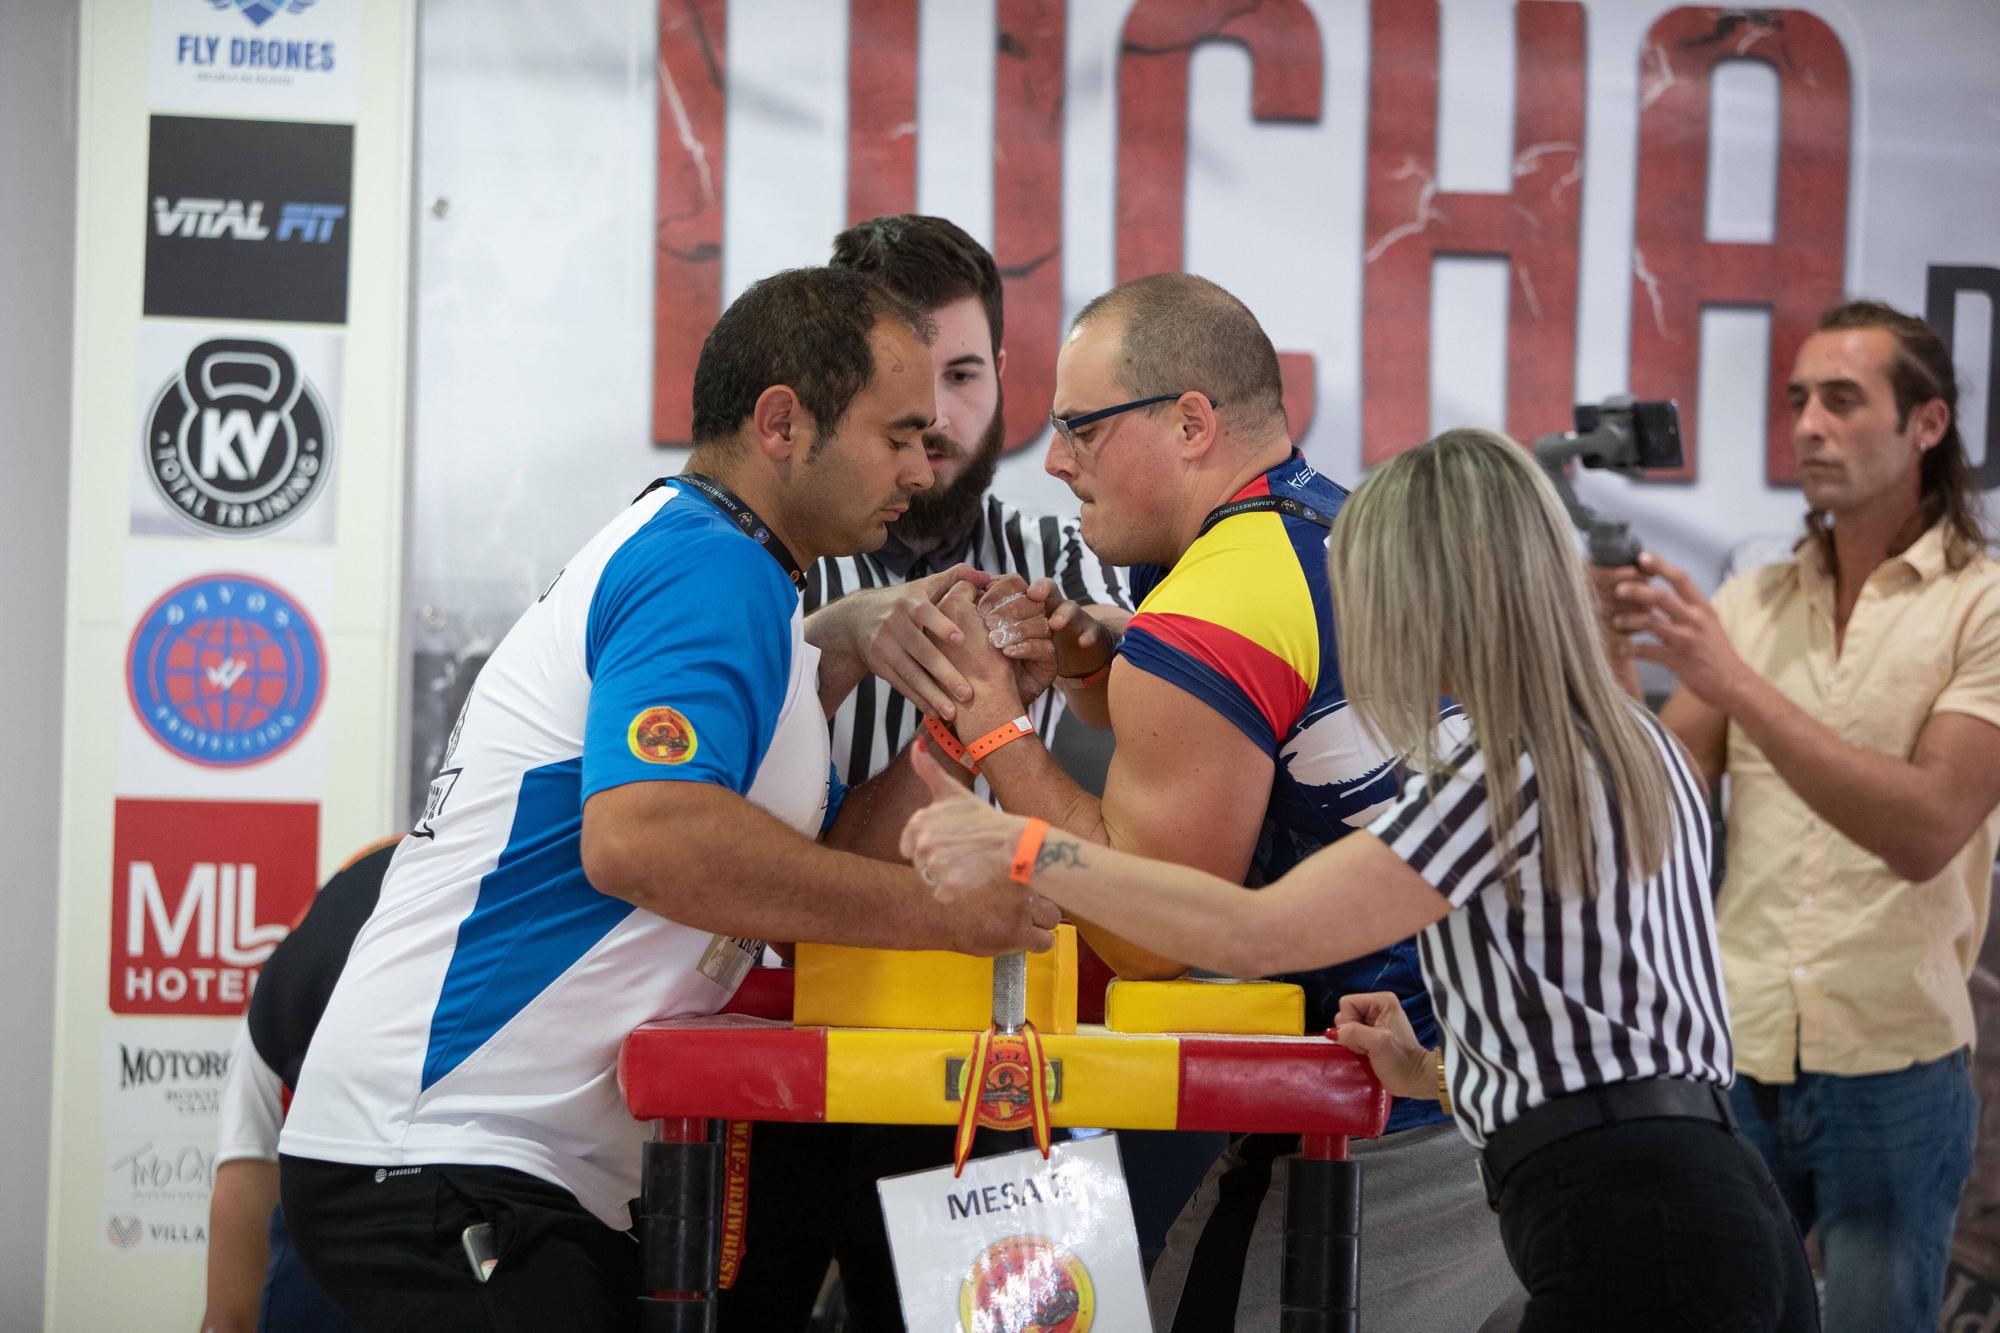 Las imágenes del Campeonato de España de lucha de brazos celebrado en s'Arenal